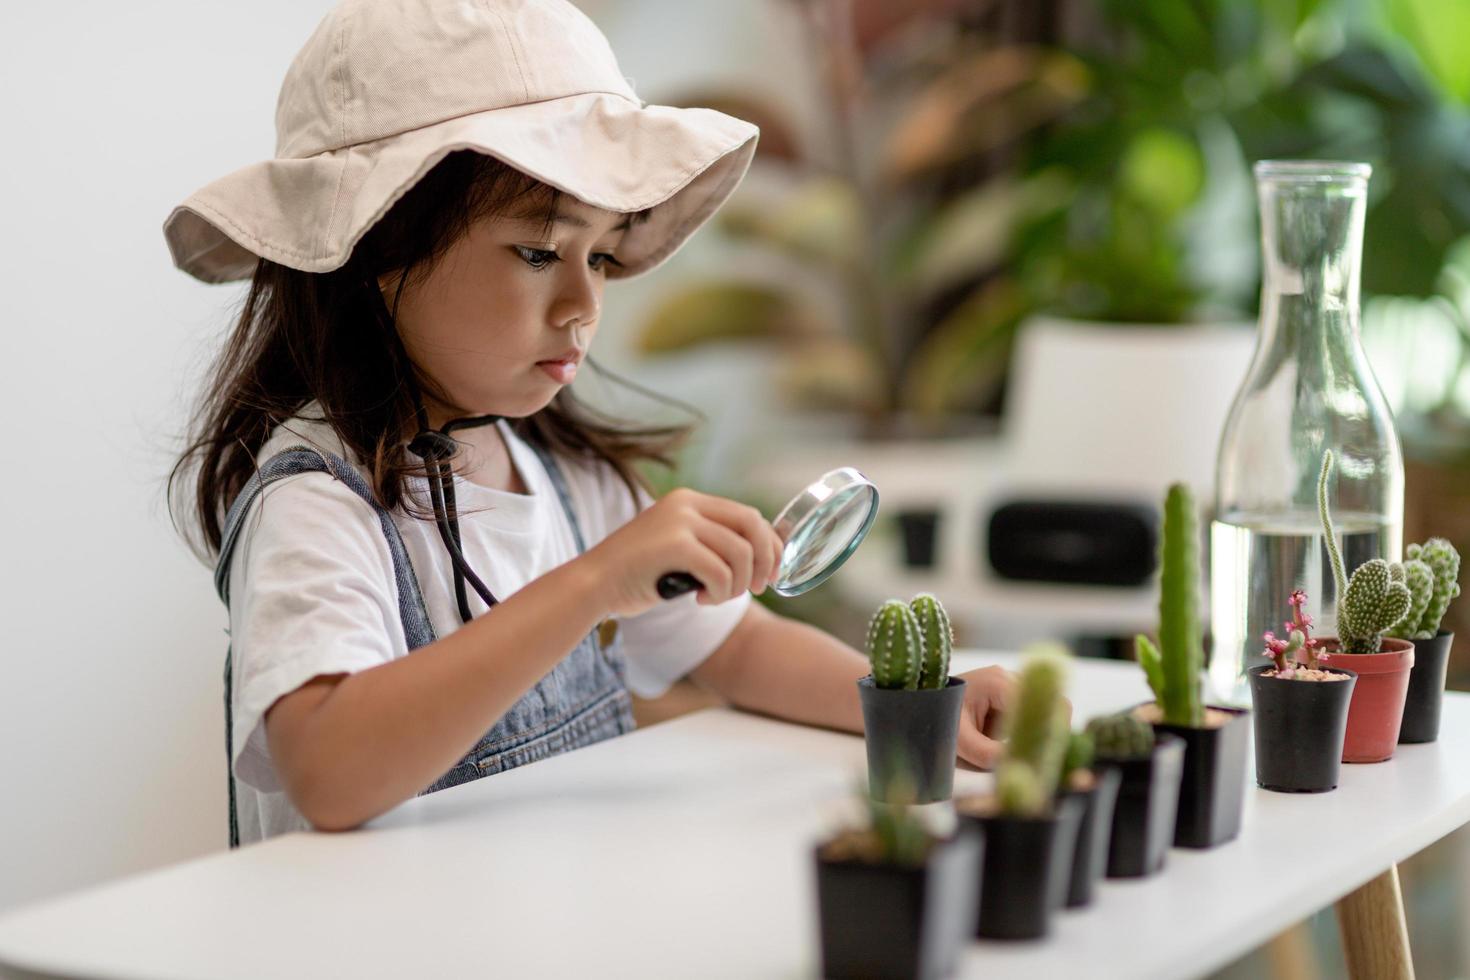 petite fille asiatique plante des plantes dans la maison, concept d'activité d'apprentissage de la culture des plantes pour un enfant d'âge préscolaire et éducation des enfants pour l'arbre dans la nature photo